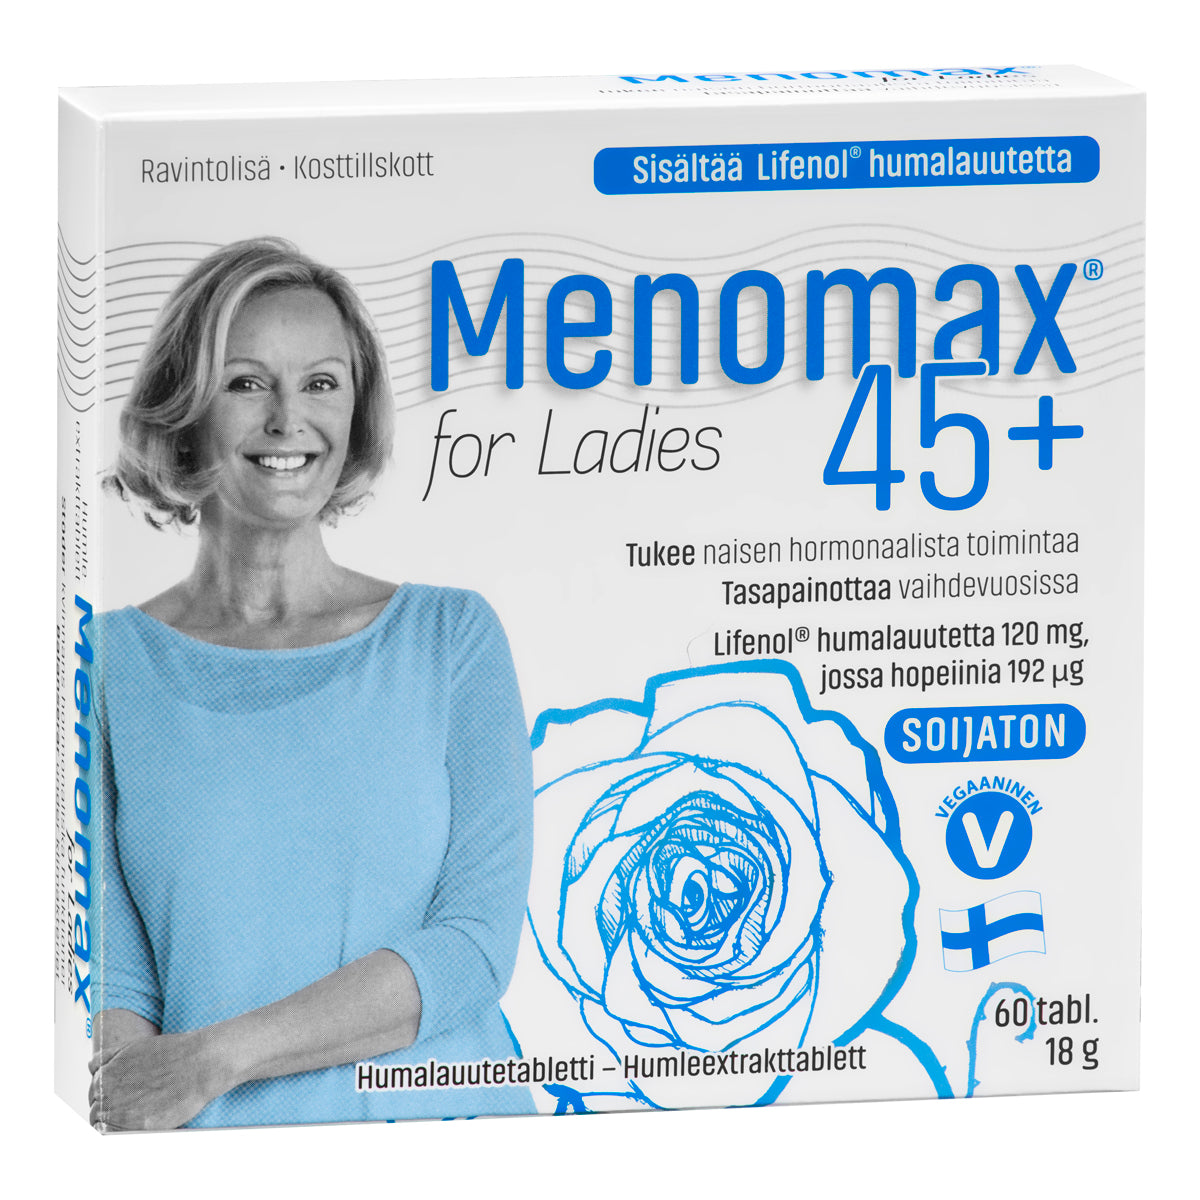 Menomax For Ladies 60 tabl. Tukee naisen hormonaalista toimintaa ja tasapainottaa vaihdevuosissa. Yksi tabletti sisältää standardoitua Lifenol humalauutetta 120 mg, jossa hopeiinia 192 μg. 